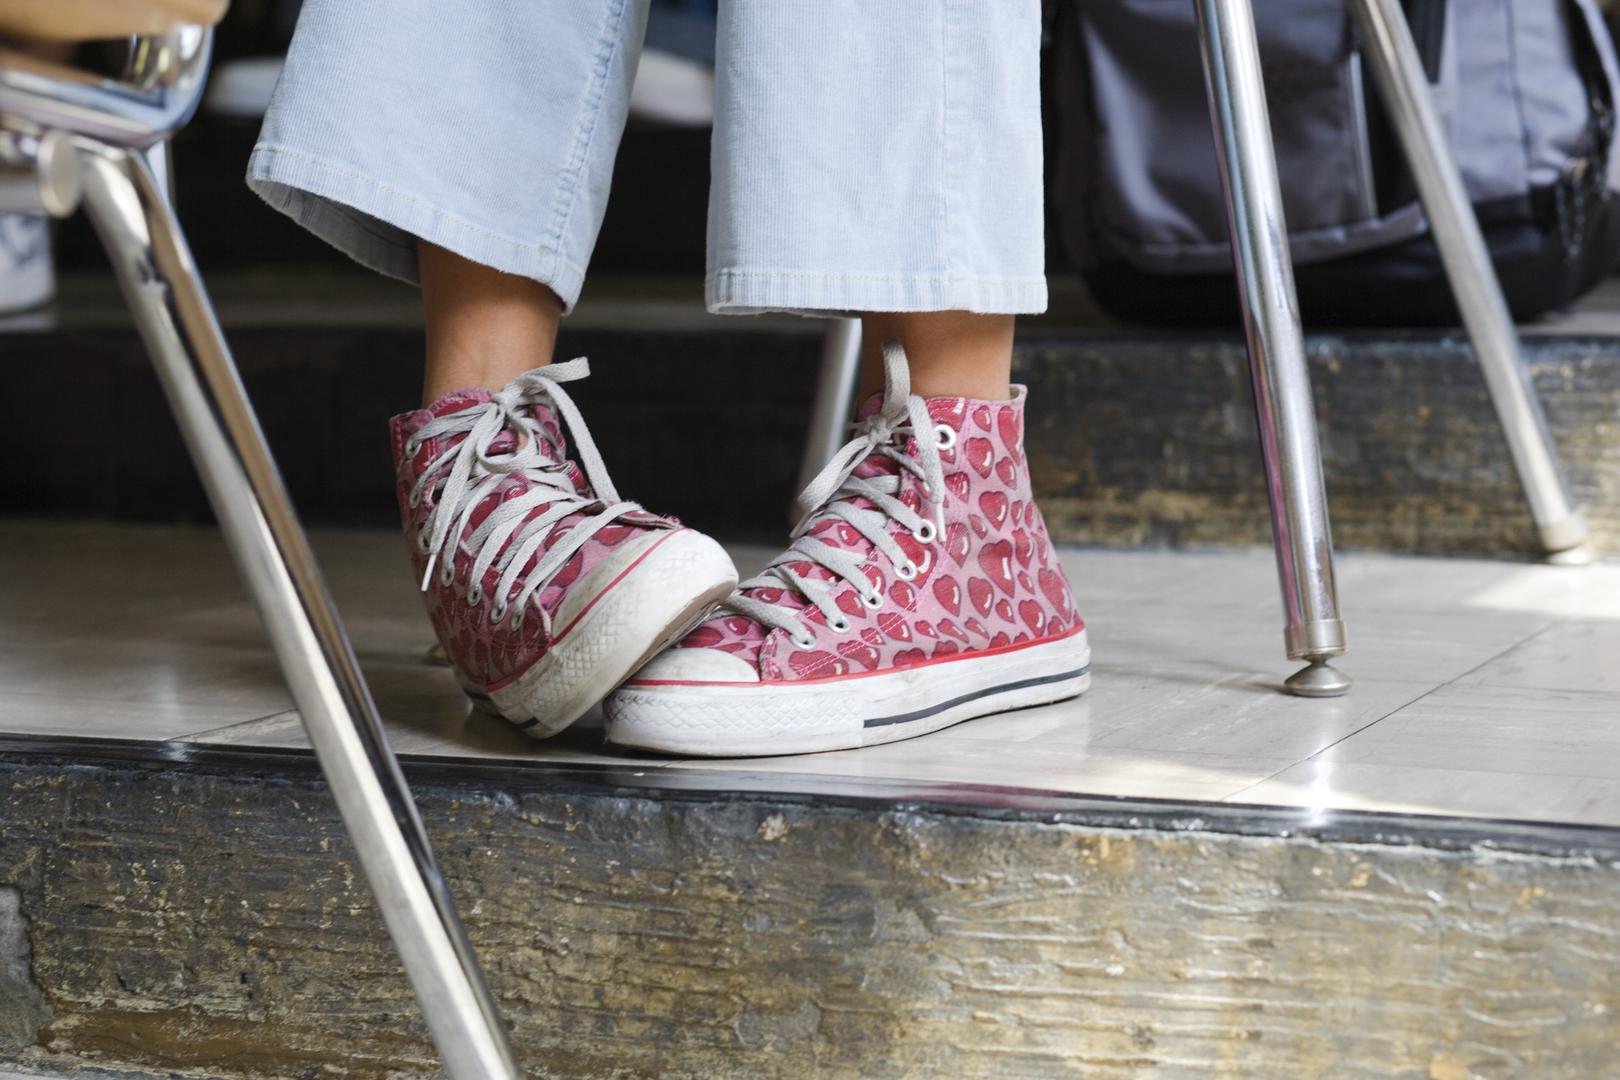 Neugodne mirise uzrokuju bakterije na nogama i svakako pažljivo operite stopala prije nego bosonogi uskočite u obuću. Svakako noge dobro osušite, posebice između nožnih prstiju. 